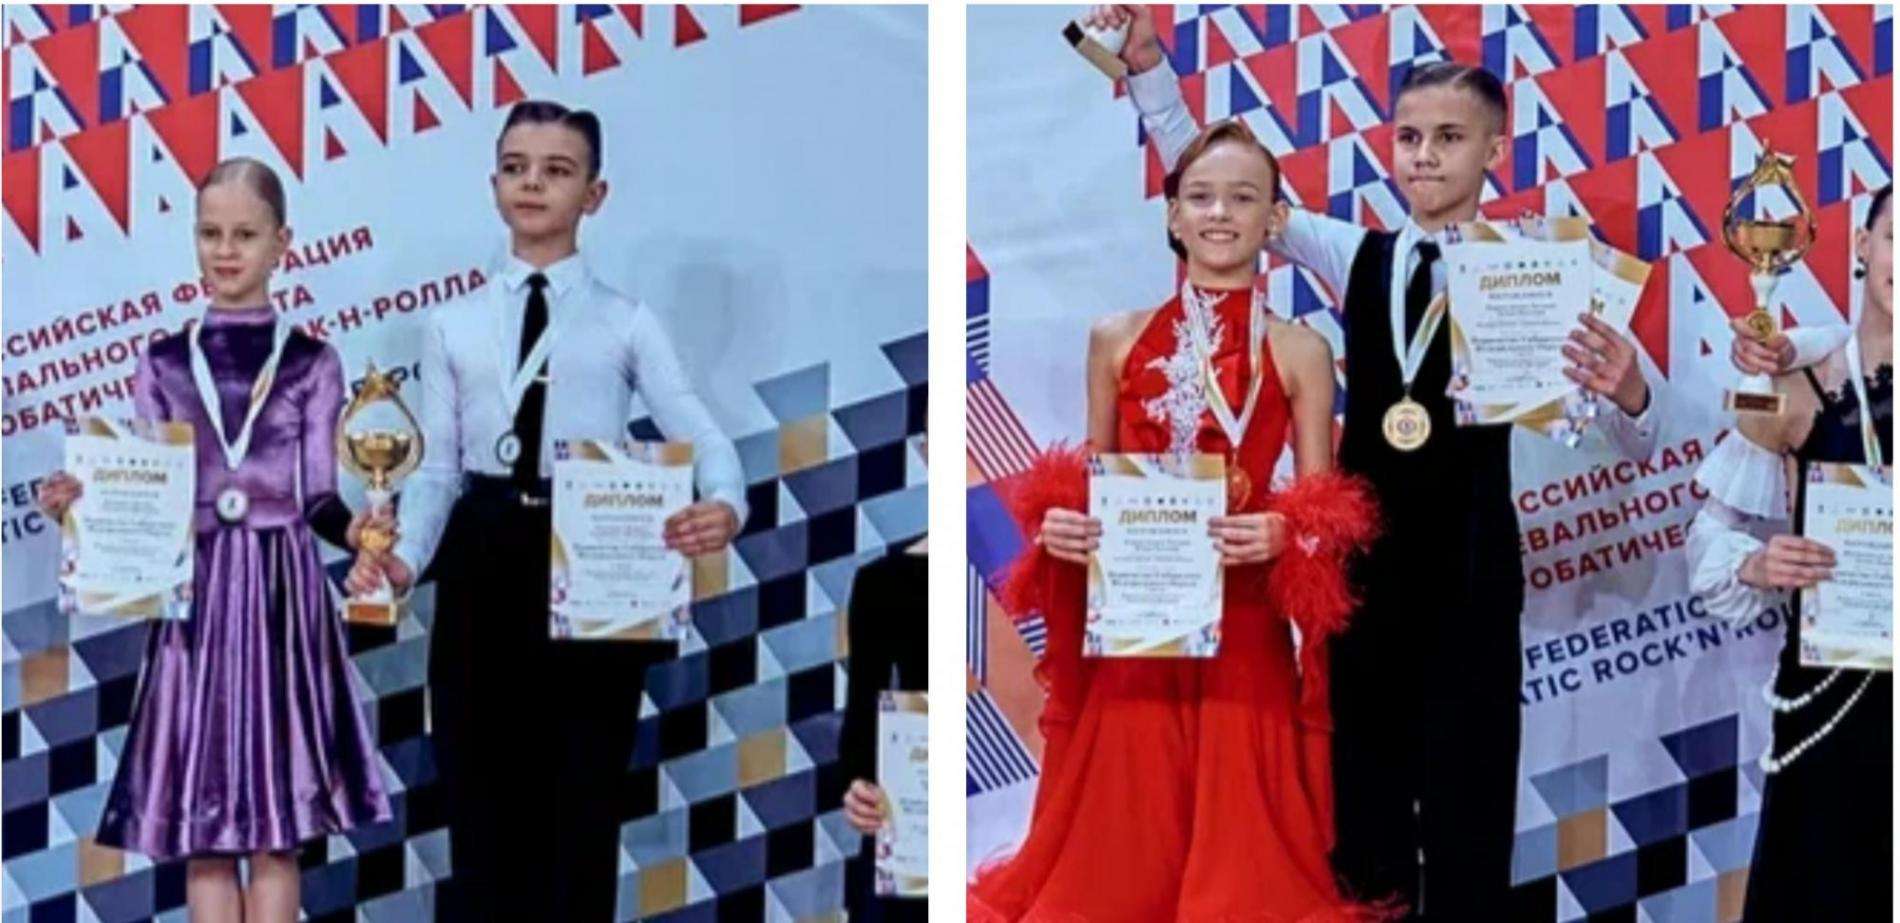 Танцевальные дуэты из Бердска получили серебро и бронзу на первенстве России